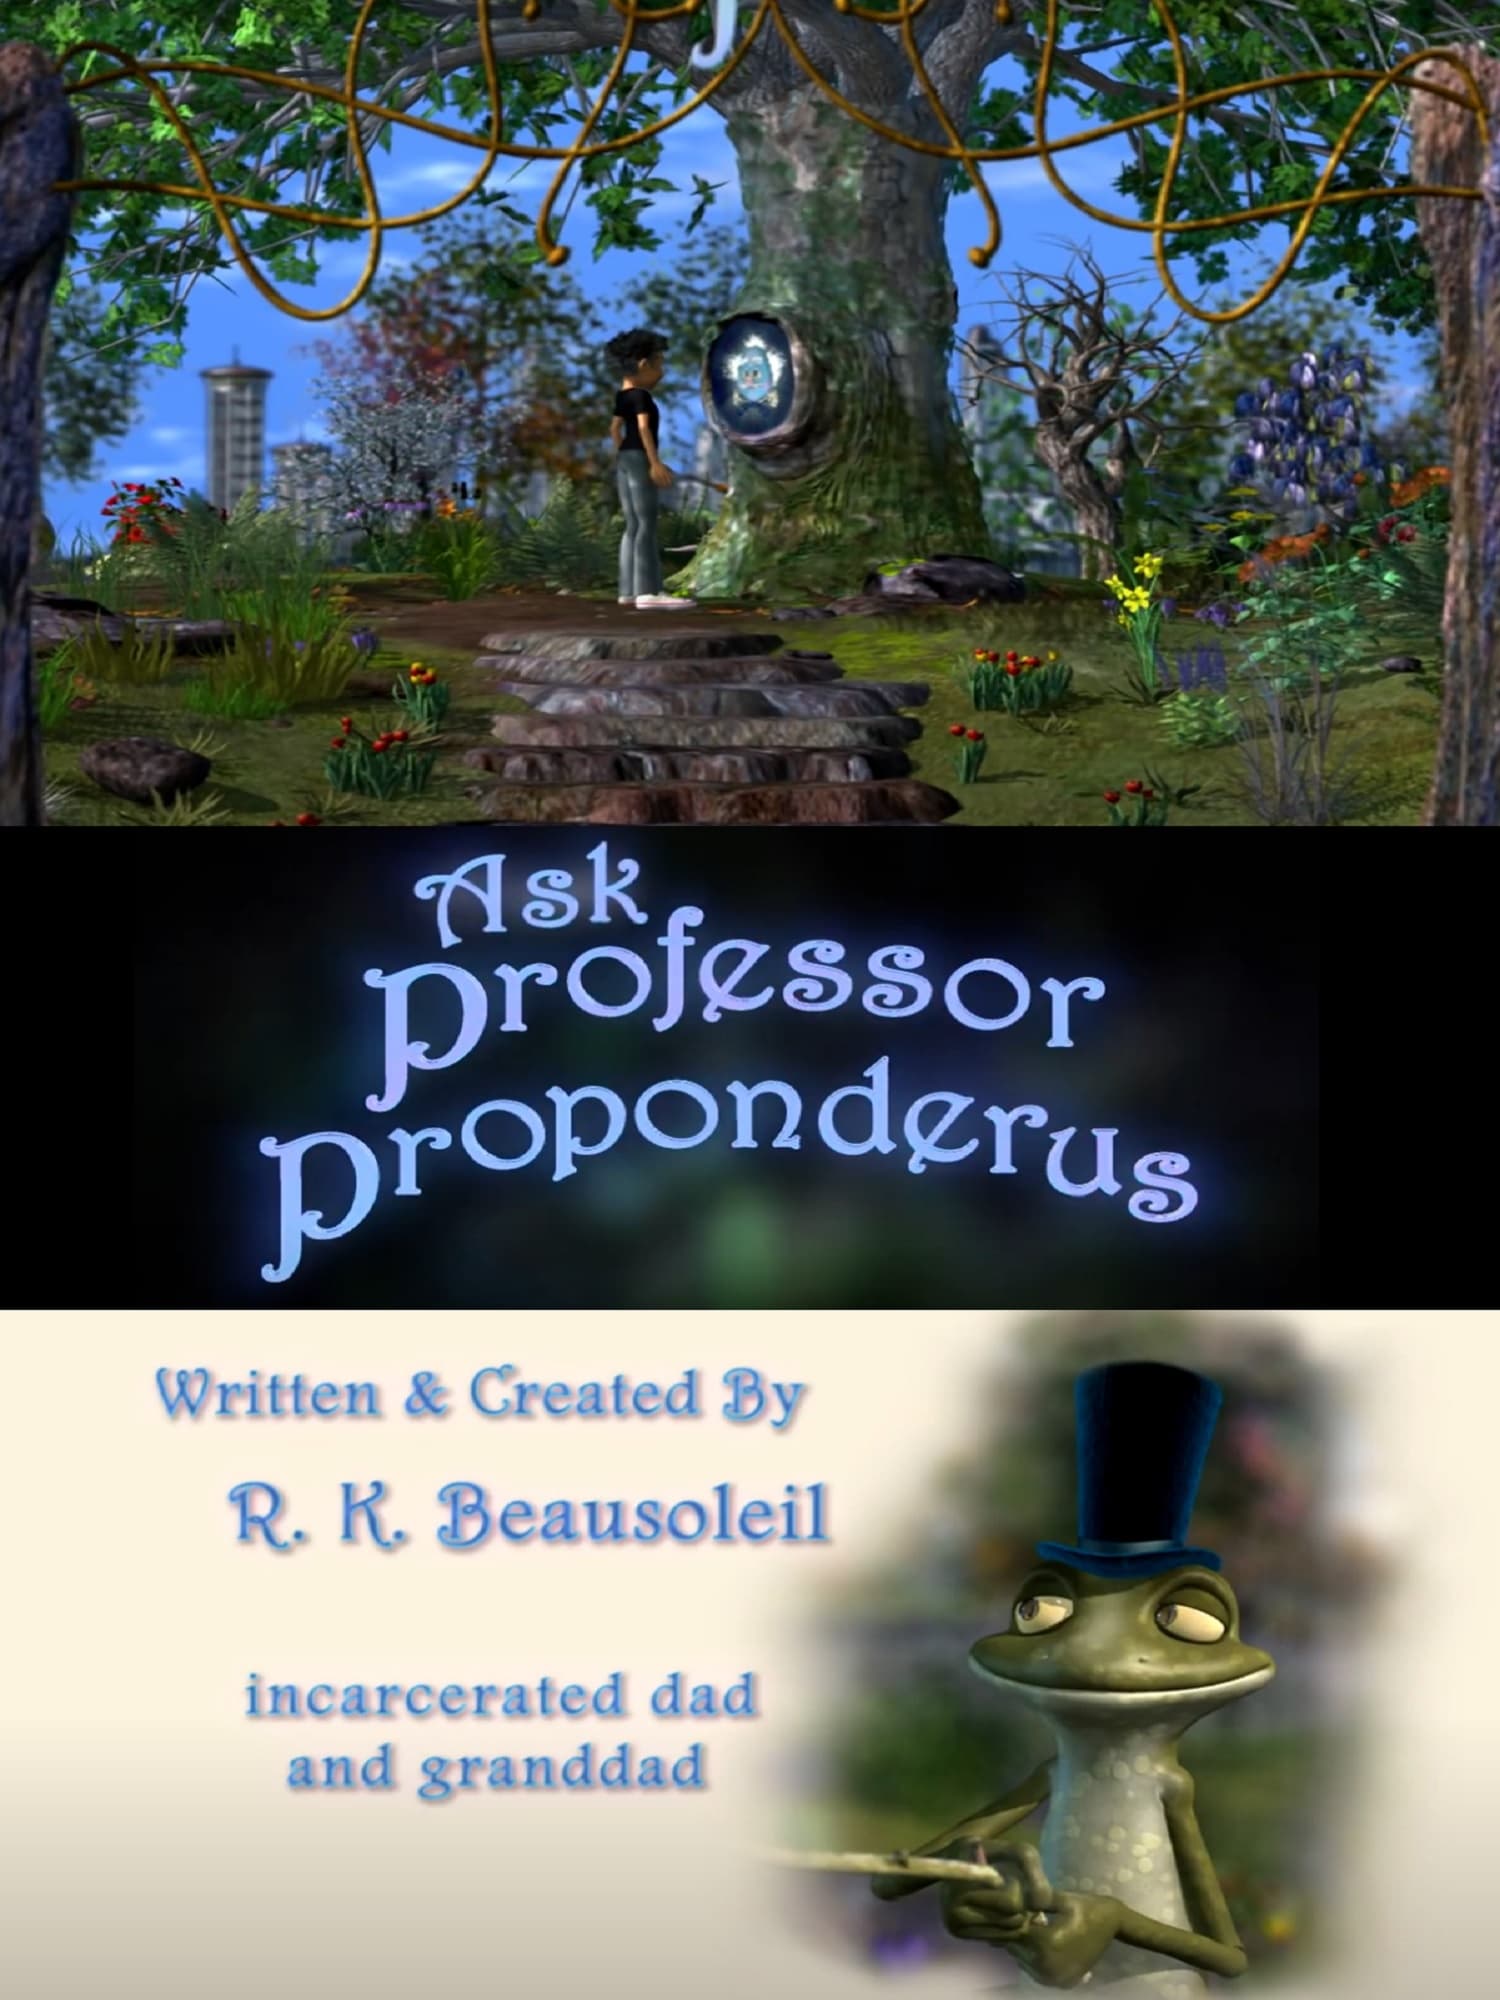 Ask Professor Proponderus: Jeeter's Hard Question